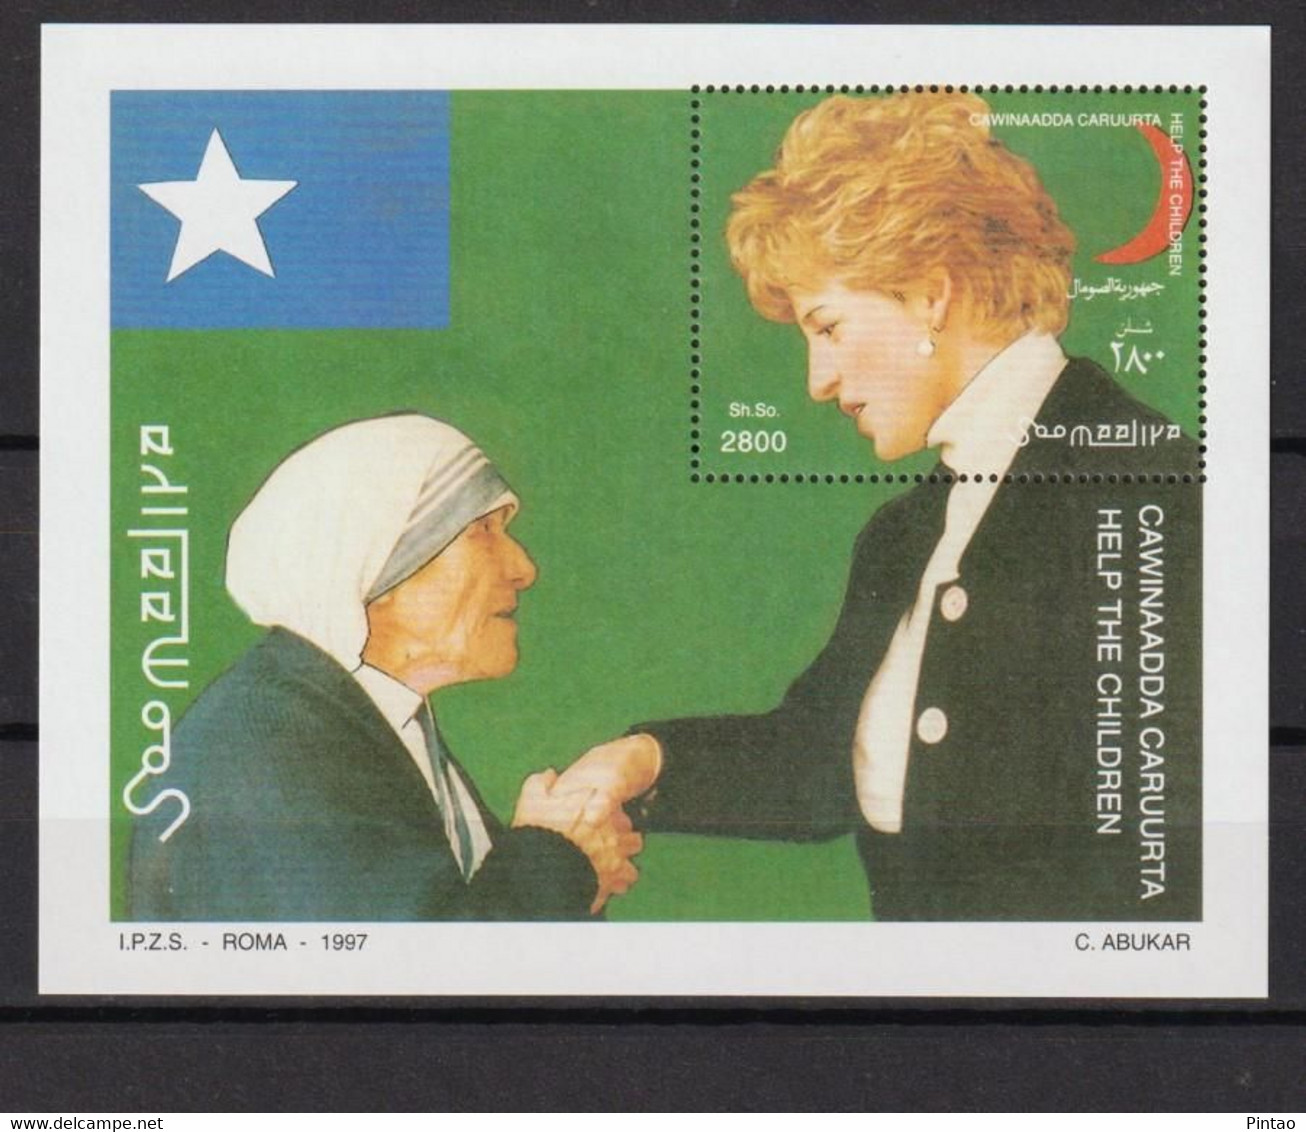 WW7396- SOMÁLIA 1997- MNH (M.Teresa Calcutá - Lady D) - Mother Teresa